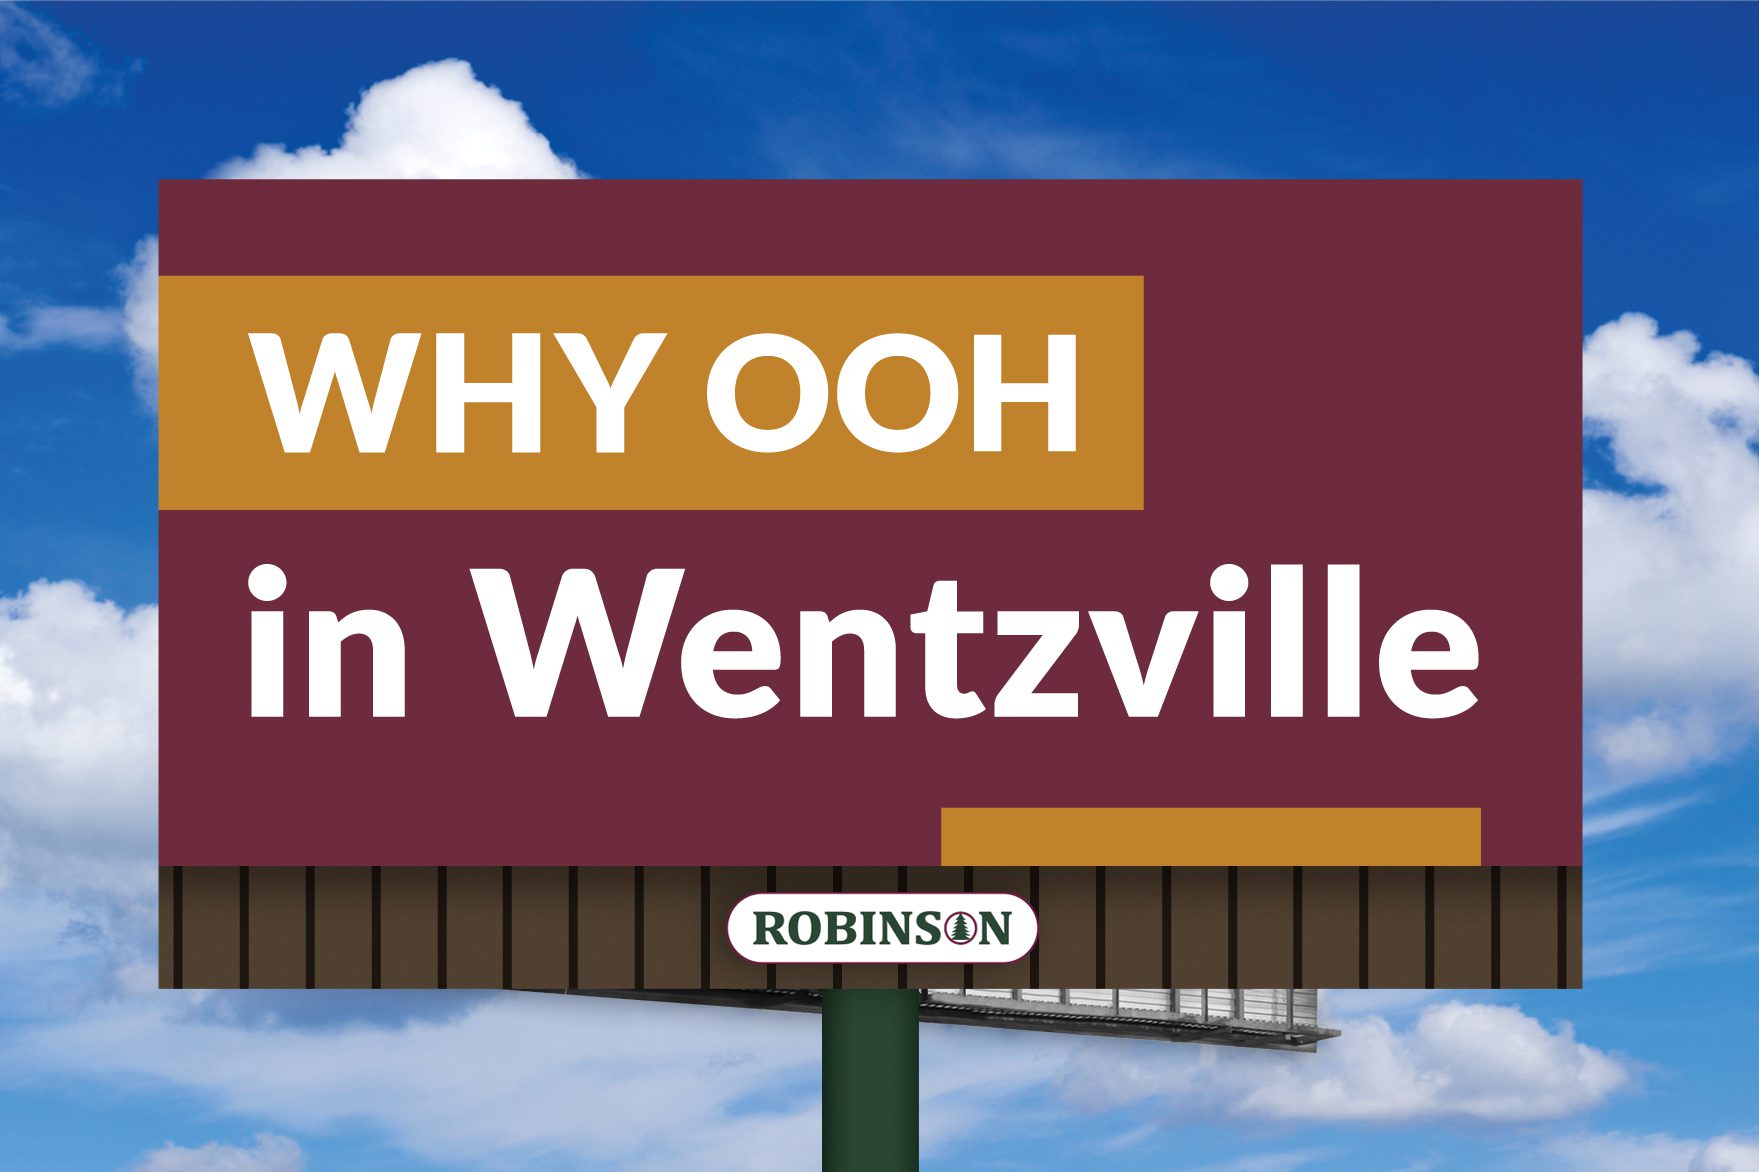 Wentzville, Missouri digital billboard advertising